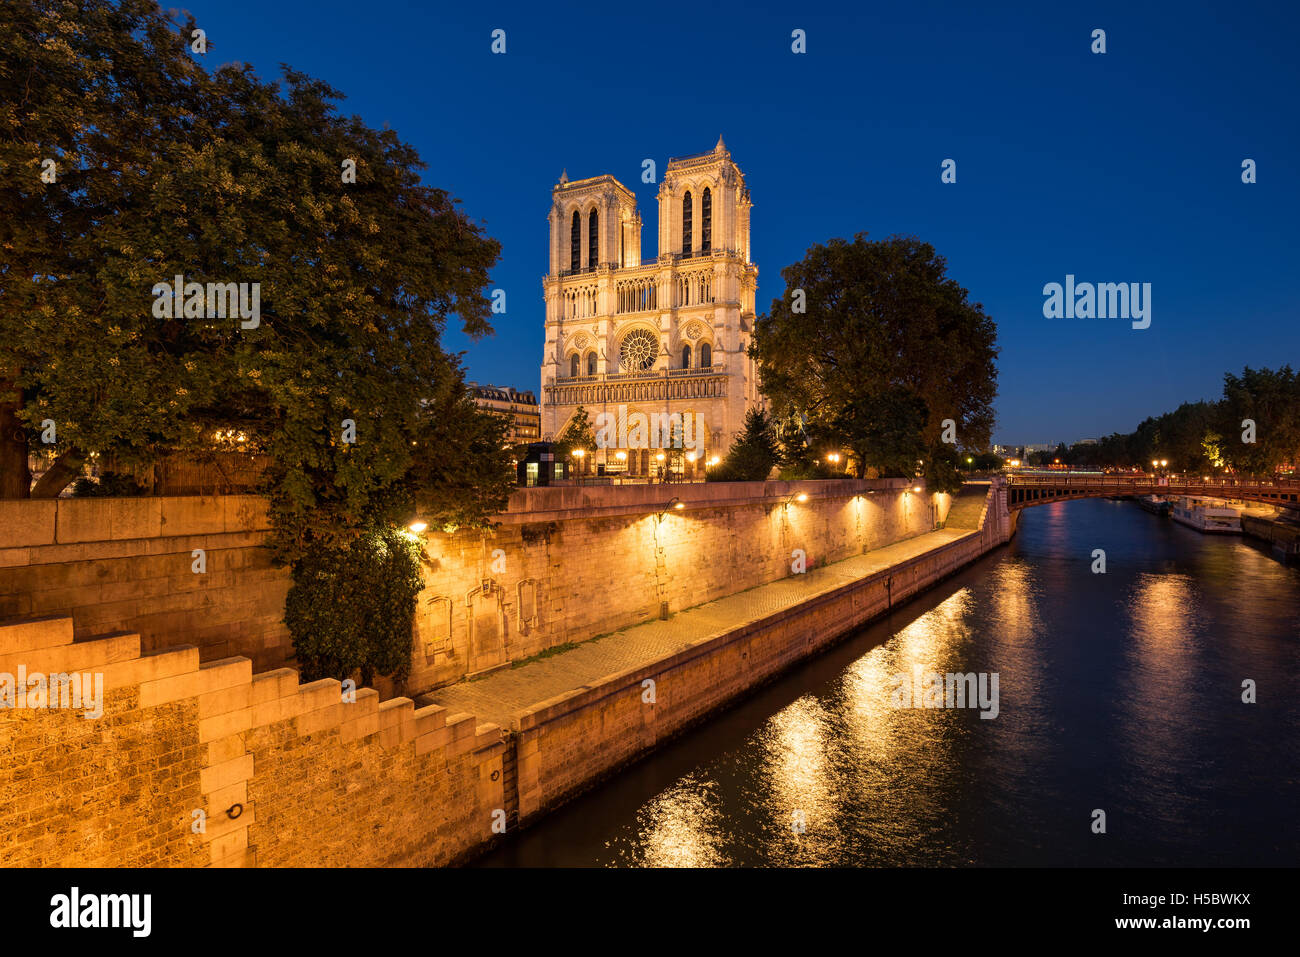 Notre Dame de Paris Cathédrale illuminée au crépuscule avec la Seine sur l'Ile de La Cité. Paris, France Banque D'Images